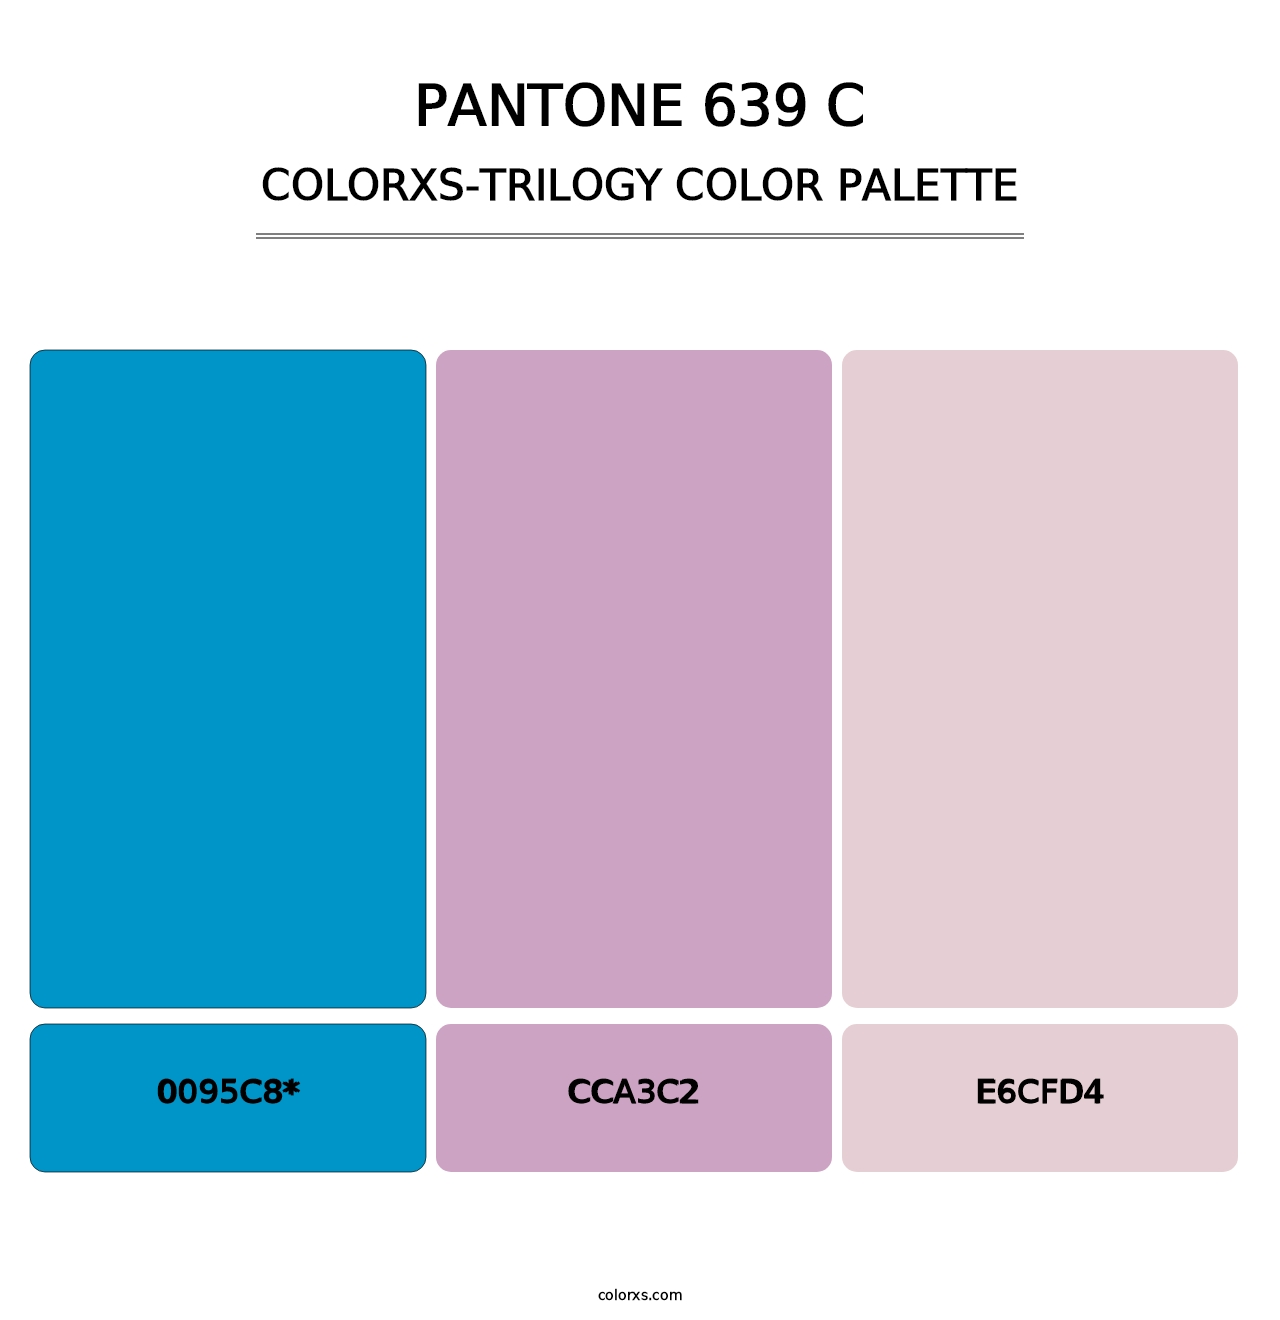 PANTONE 639 C - Colorxs Trilogy Palette